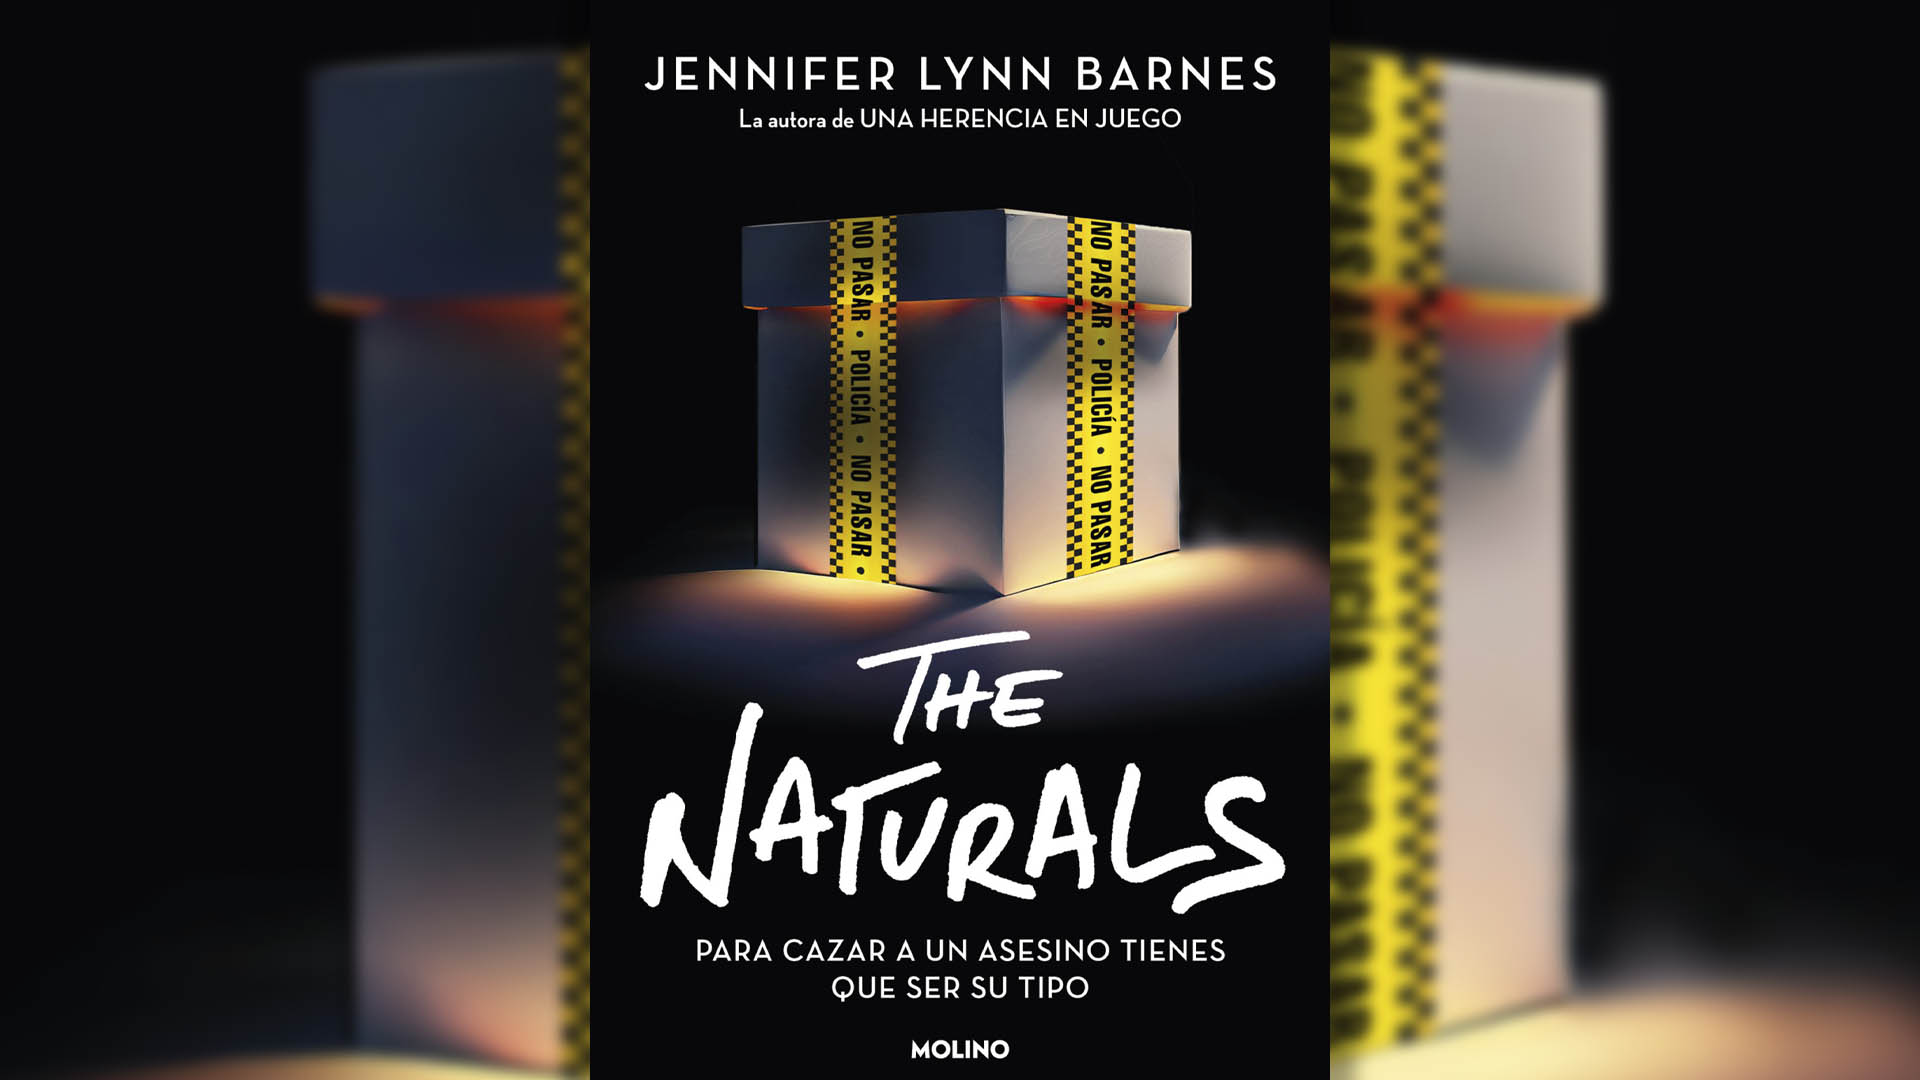 Un programa secreto del FBI, un don y una maldición en “The Naturals”, el nuevo libro de Jennifer Lynn Barnes